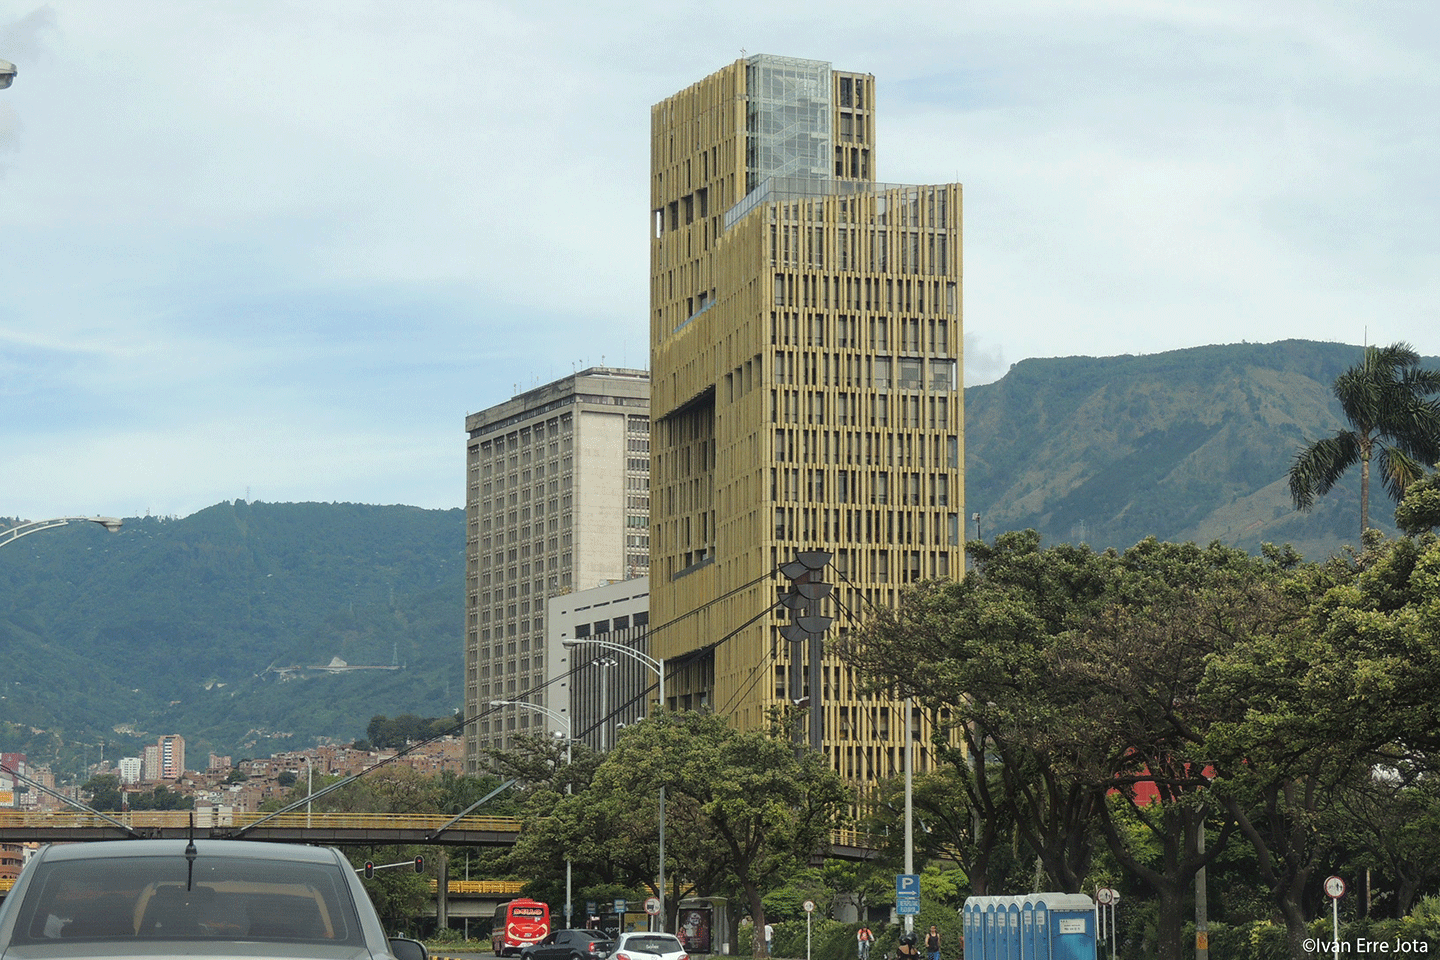 Medellin Administrative Center